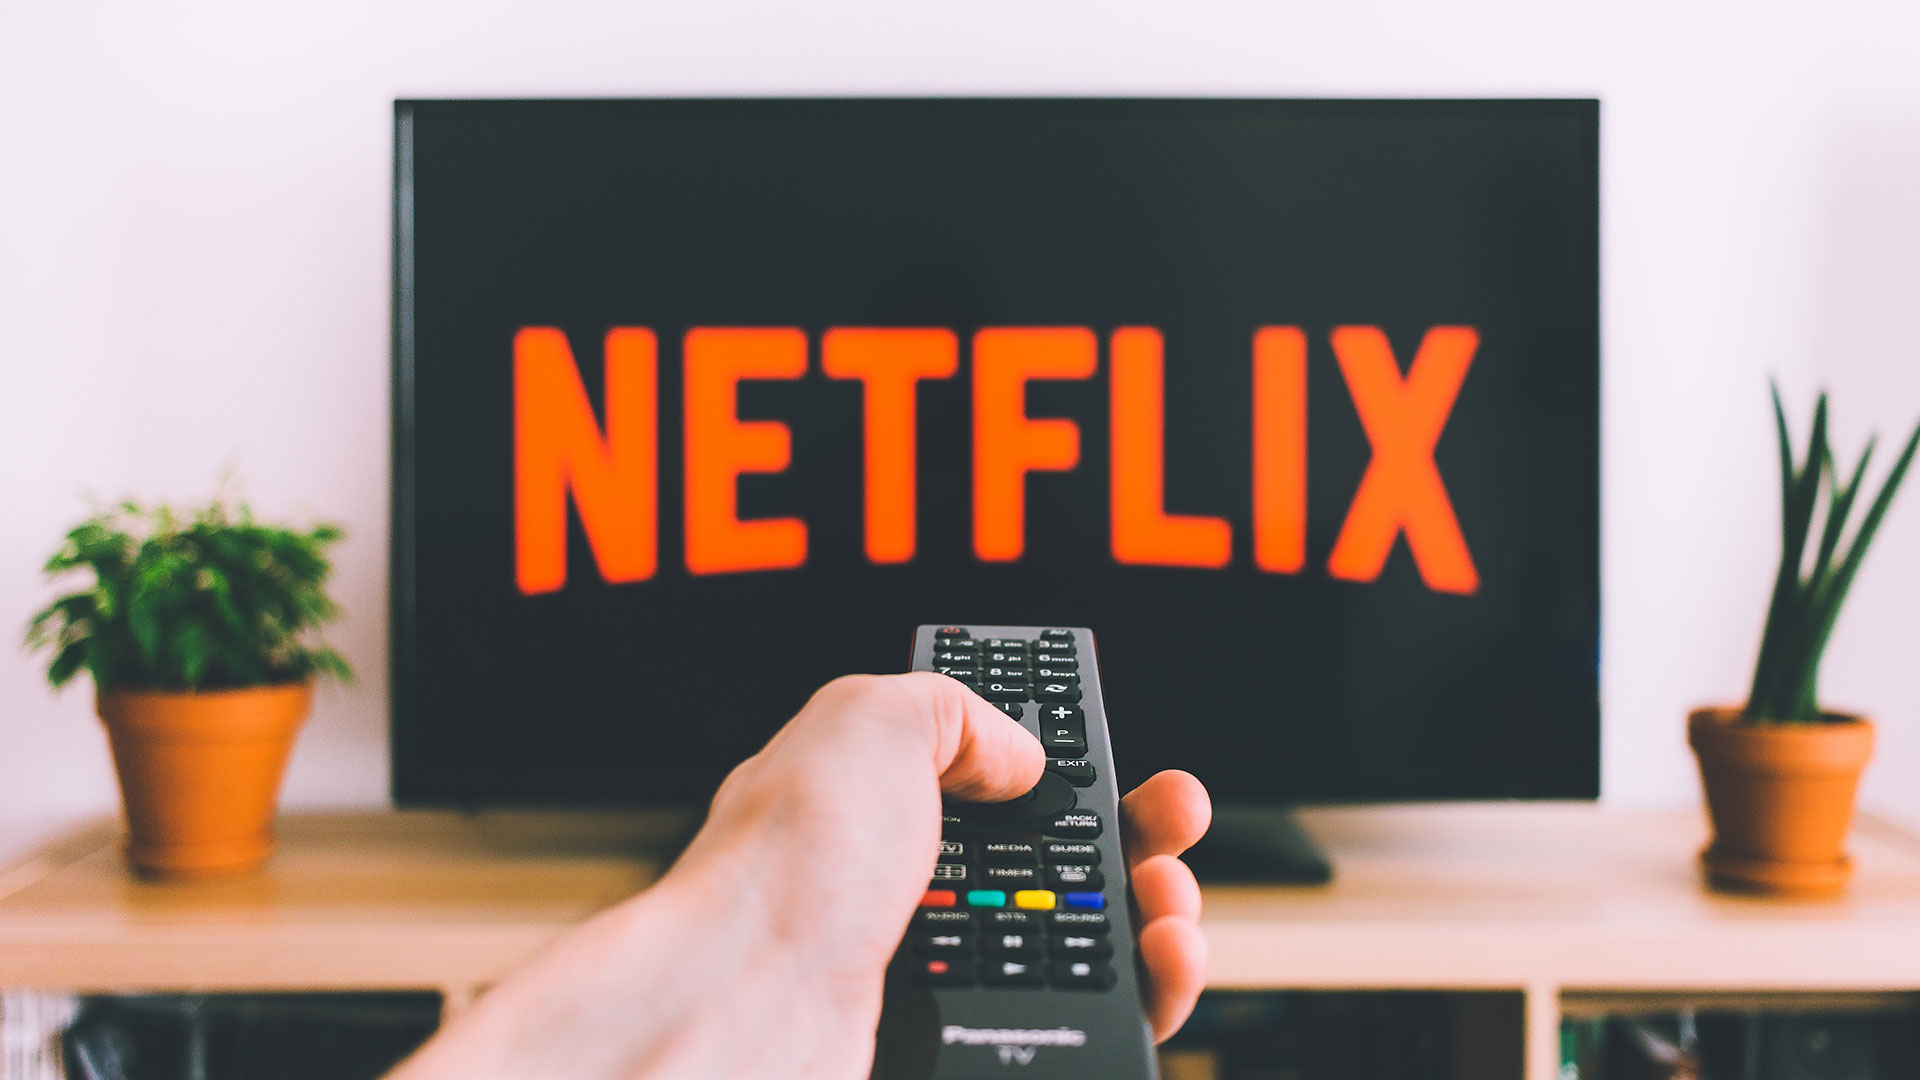 Netflix testet jetzt Werbung zwischen einzelnen Episoden. Binge-Watching wird dadurch gestört